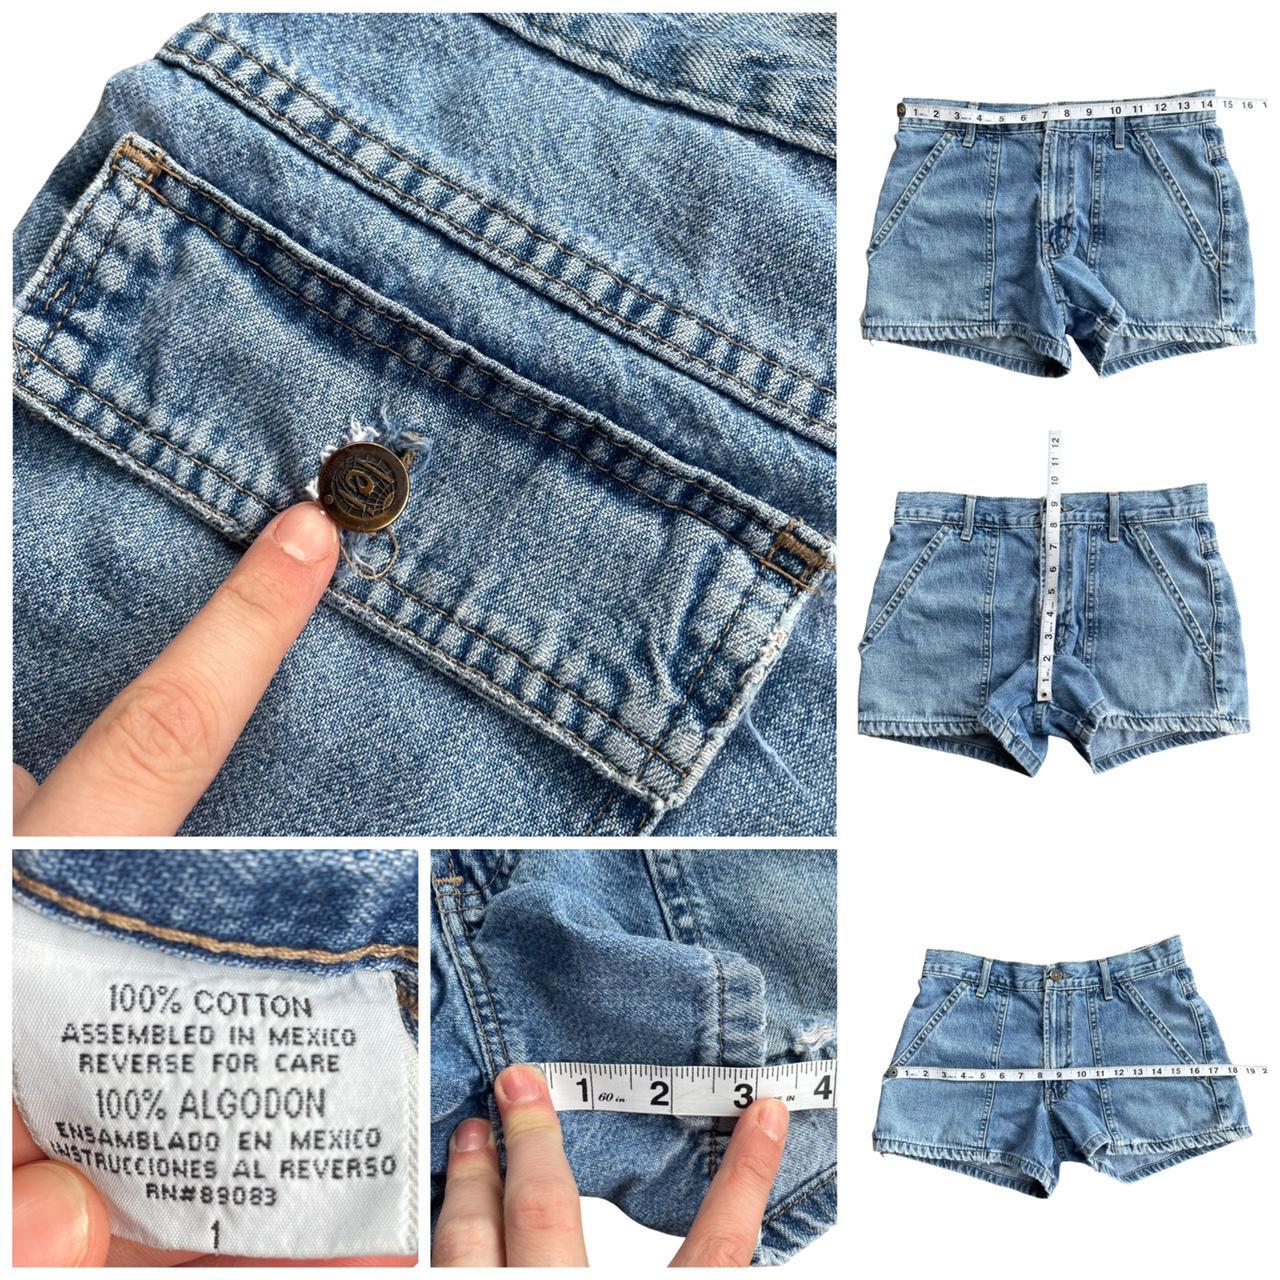 Product Image 4 - Vintage Y2K LEI Denim Shorts

Nice